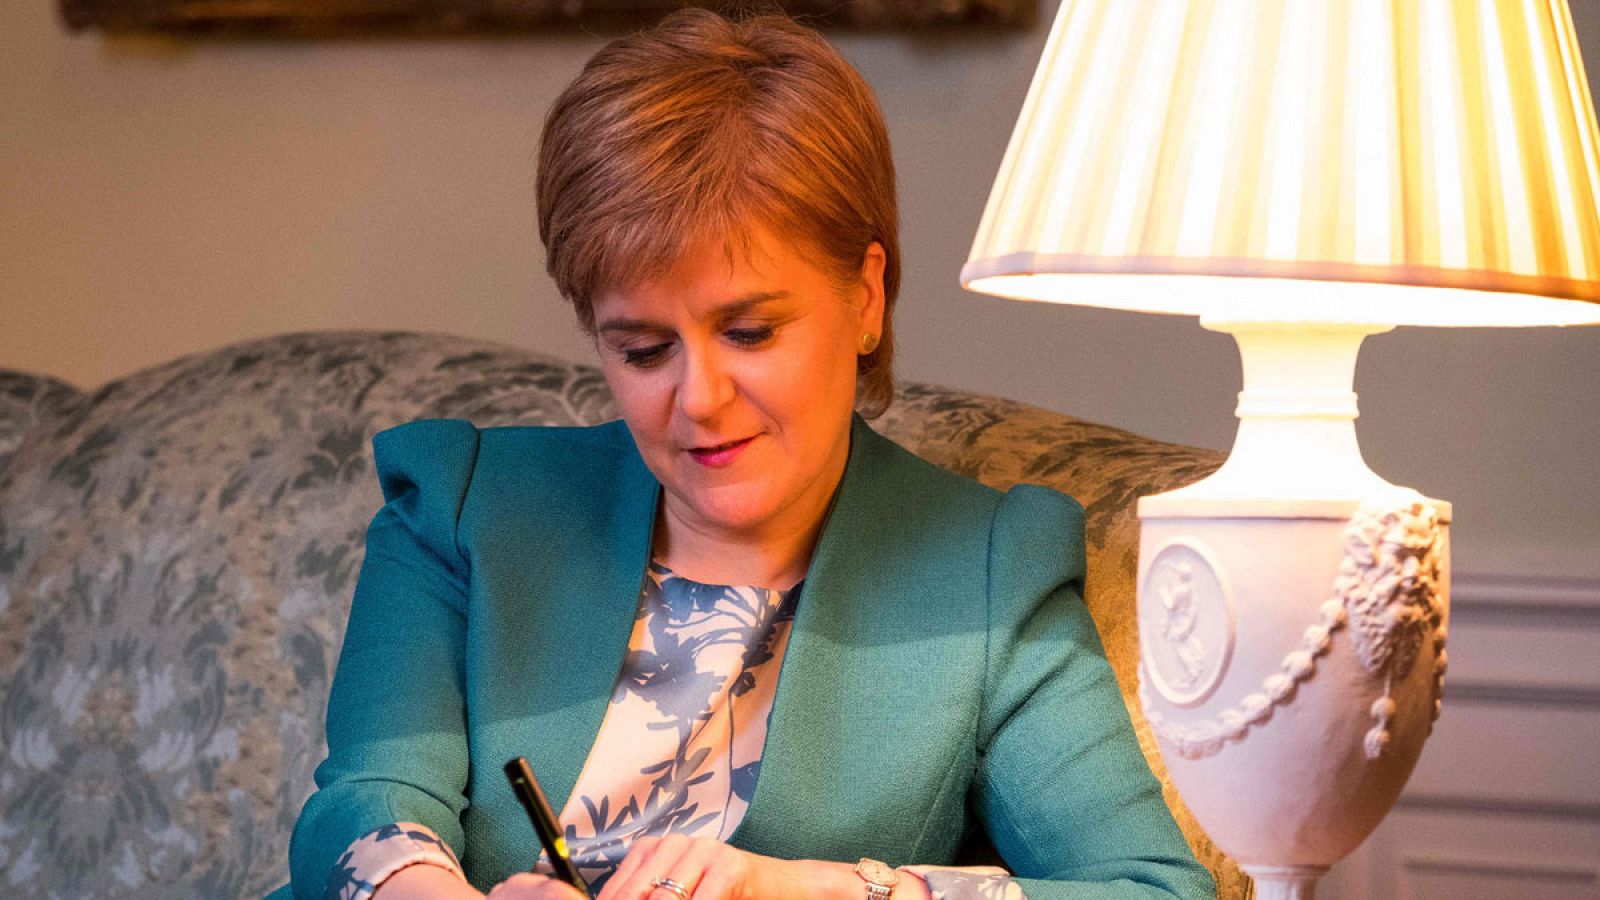 Nicola Sturgeon trabajando en el borrador final de la carta con la que pedirá al Gobierno británico de forma oficial un nuevo referéndum de independencia en Escocia.